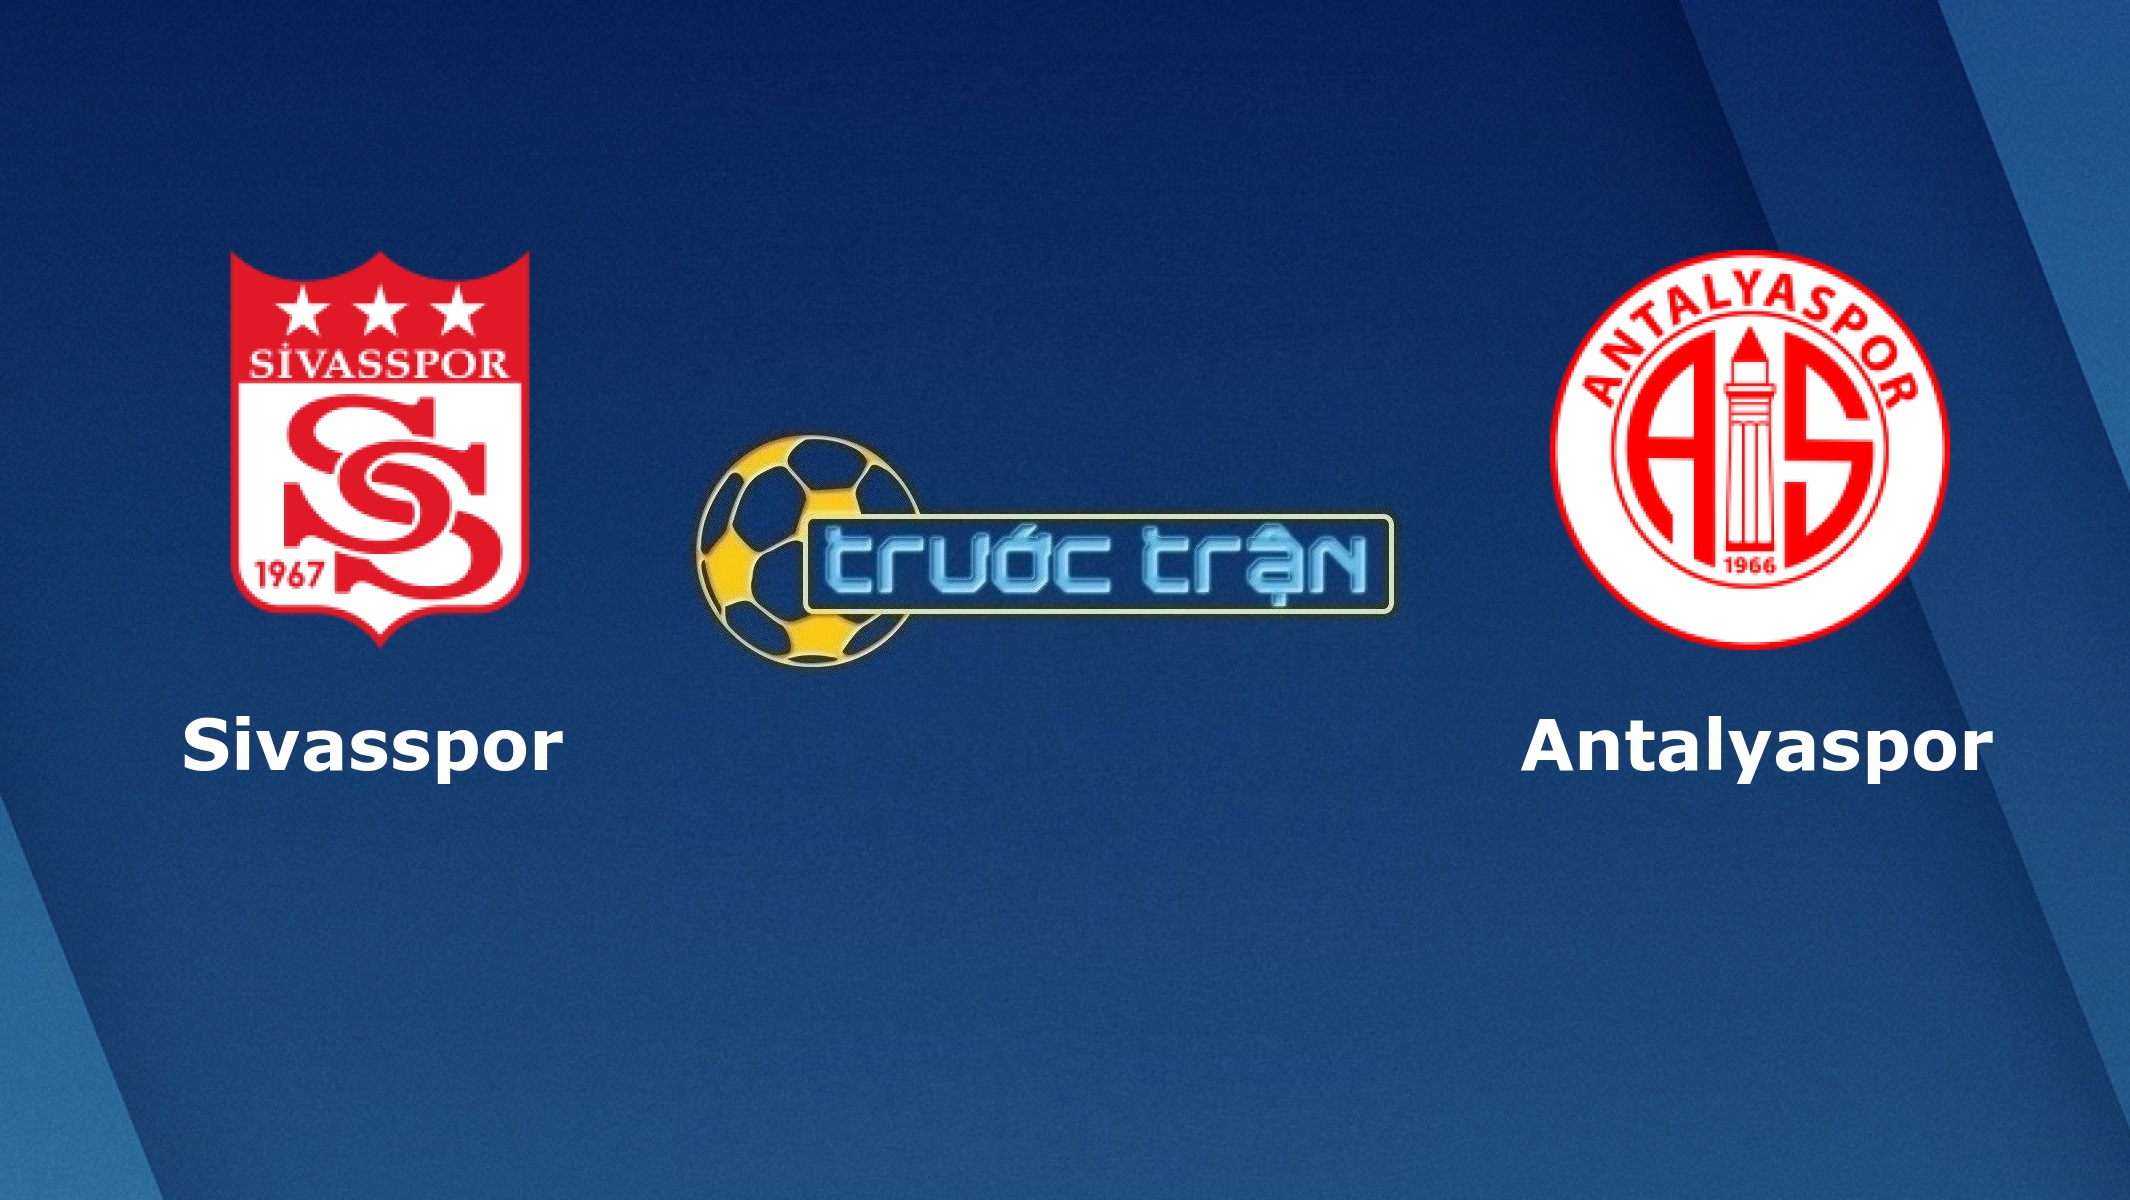 Sivasspor vs Antalyaspor – Tip kèo bóng đá hôm nay – 23h00 14/12/2020